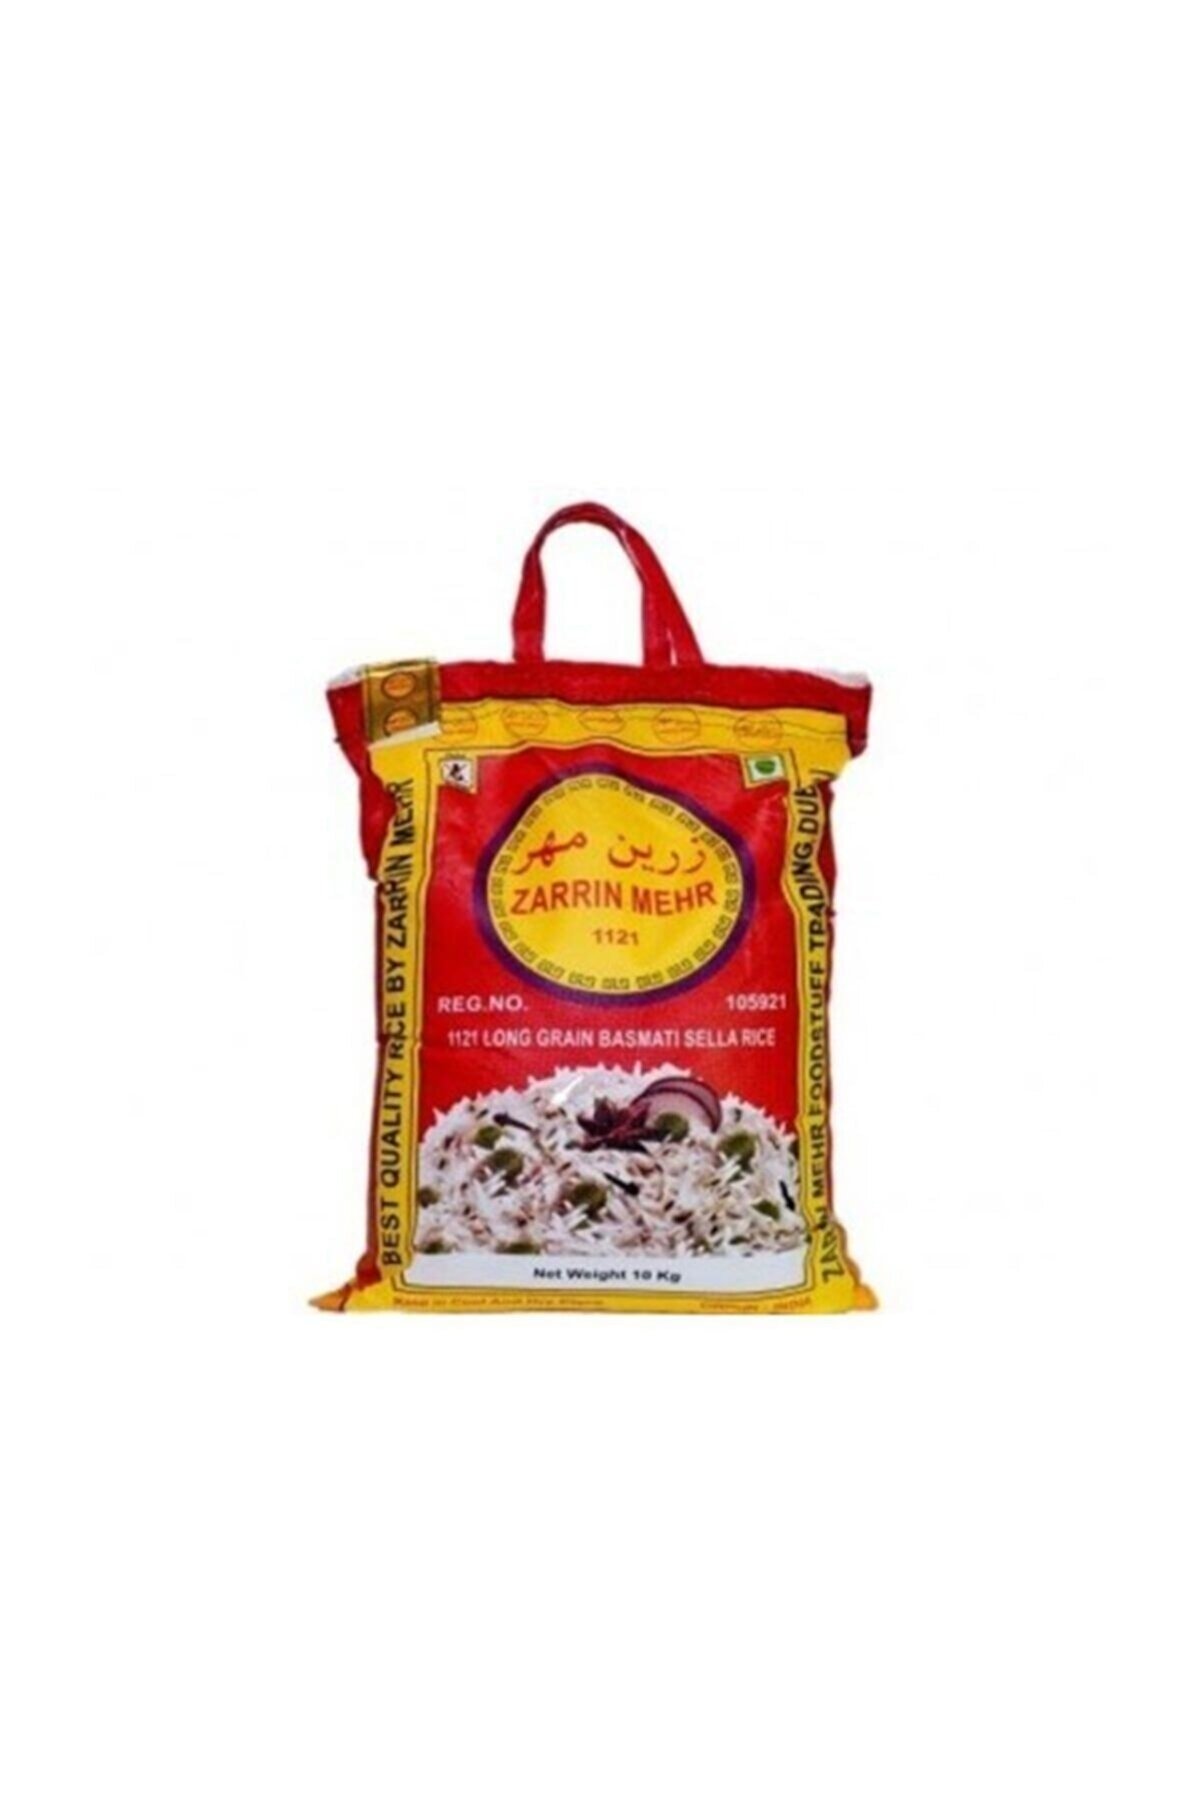 Zarrin Mehr Basmati Safran Aromalı Pirinç 10 kg 1121